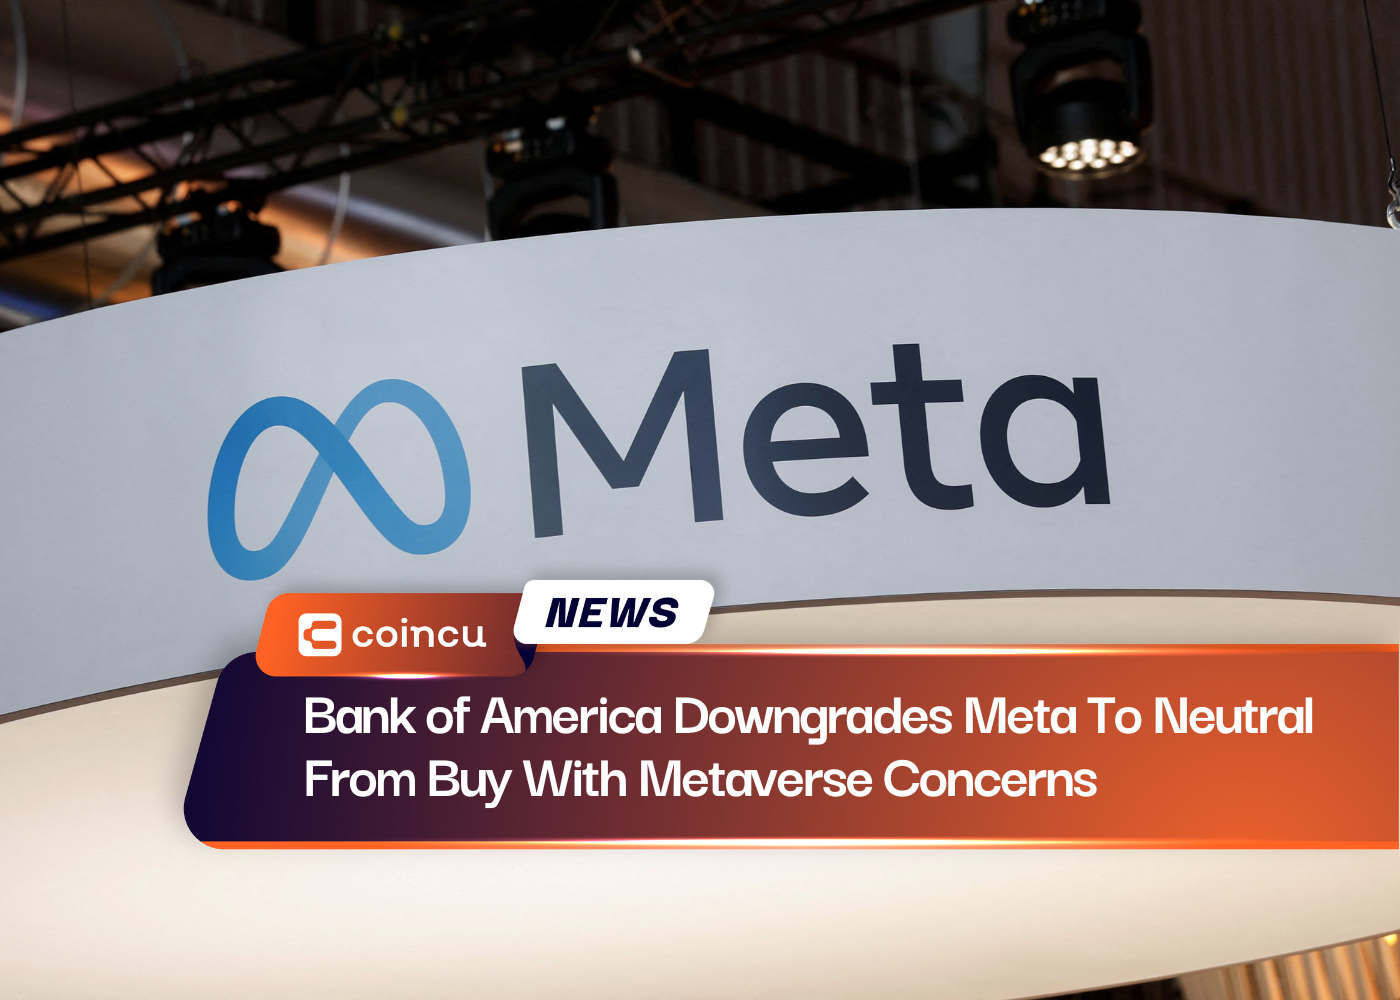 قام Bank of America بتخفيض تصنيف Meta إلى الحياد من الشراء بسبب مخاوف Metaverse